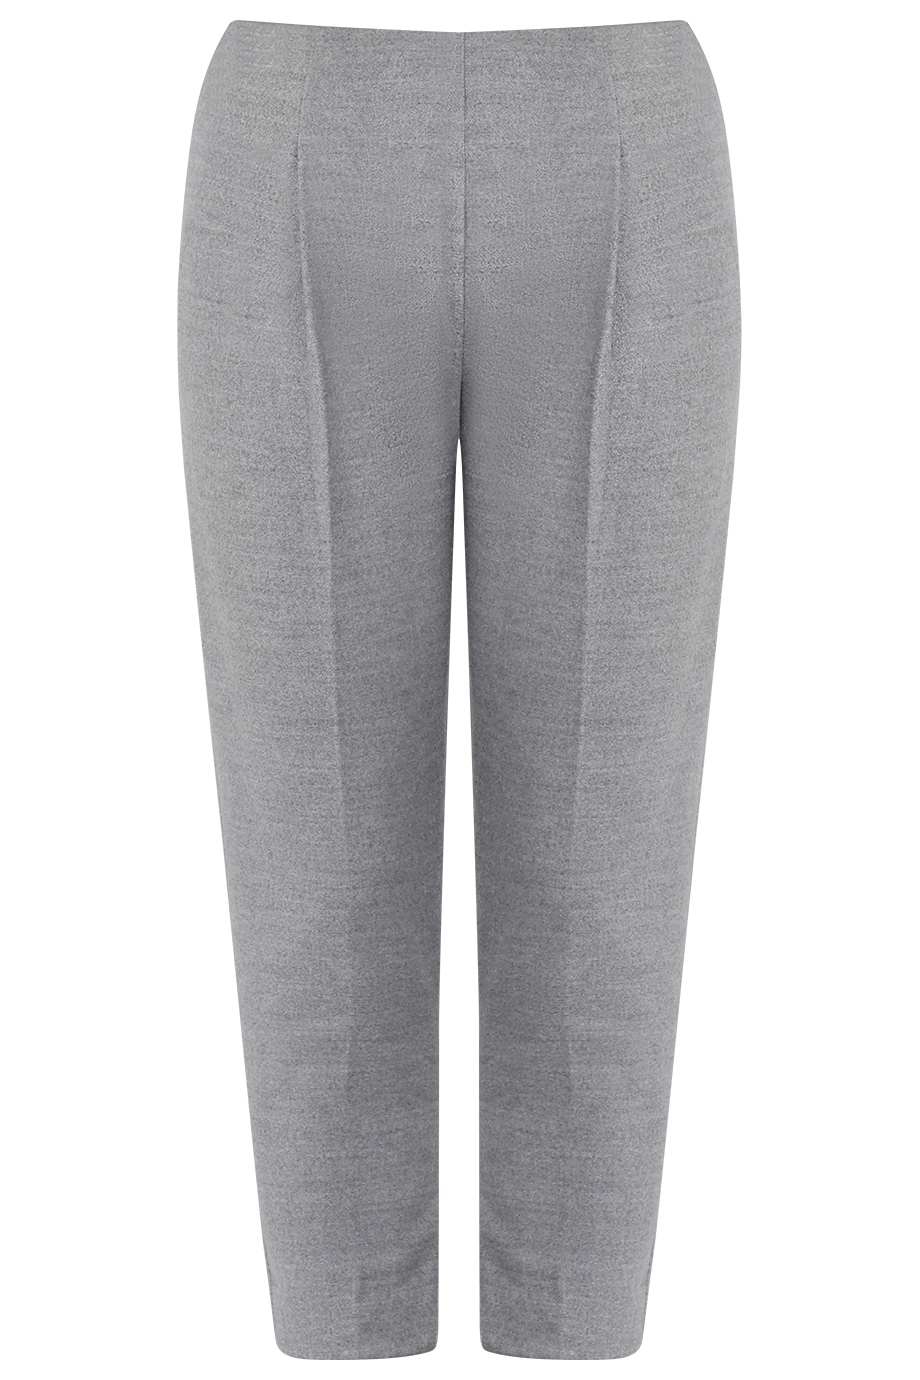 Quần Gabriel Suit pants/ Coin grey